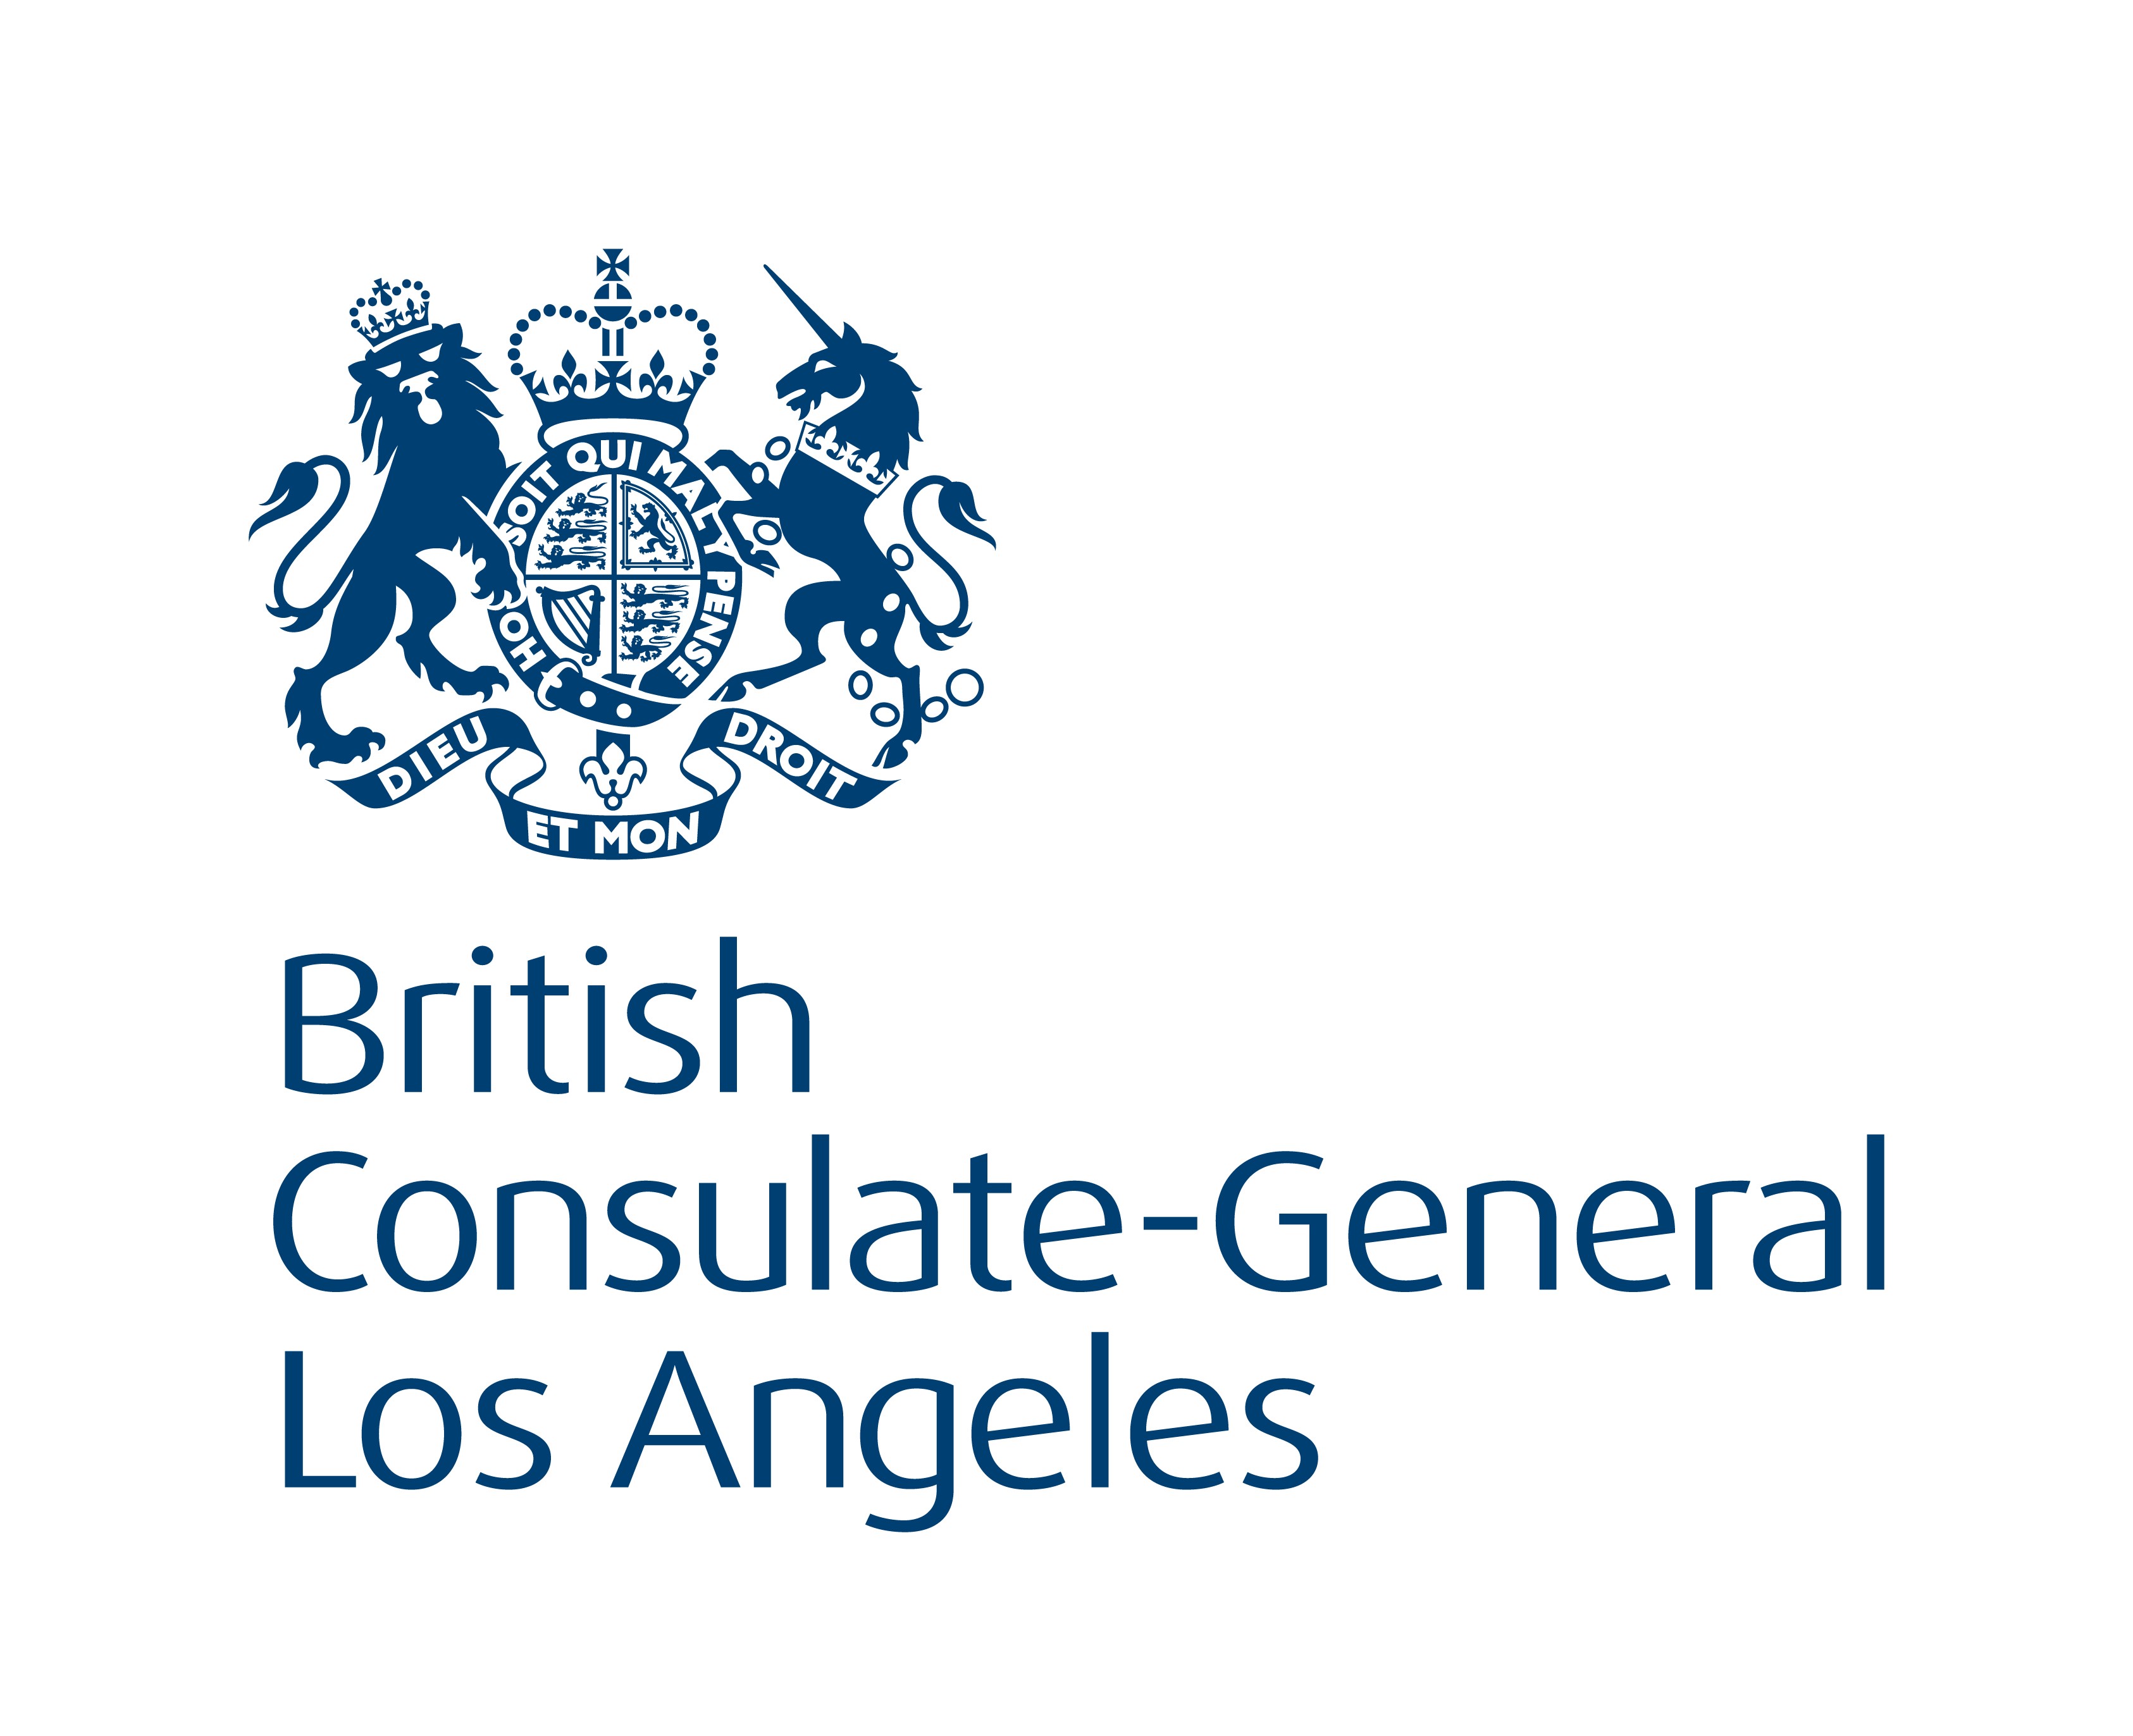 British Consultate General Los Angeles